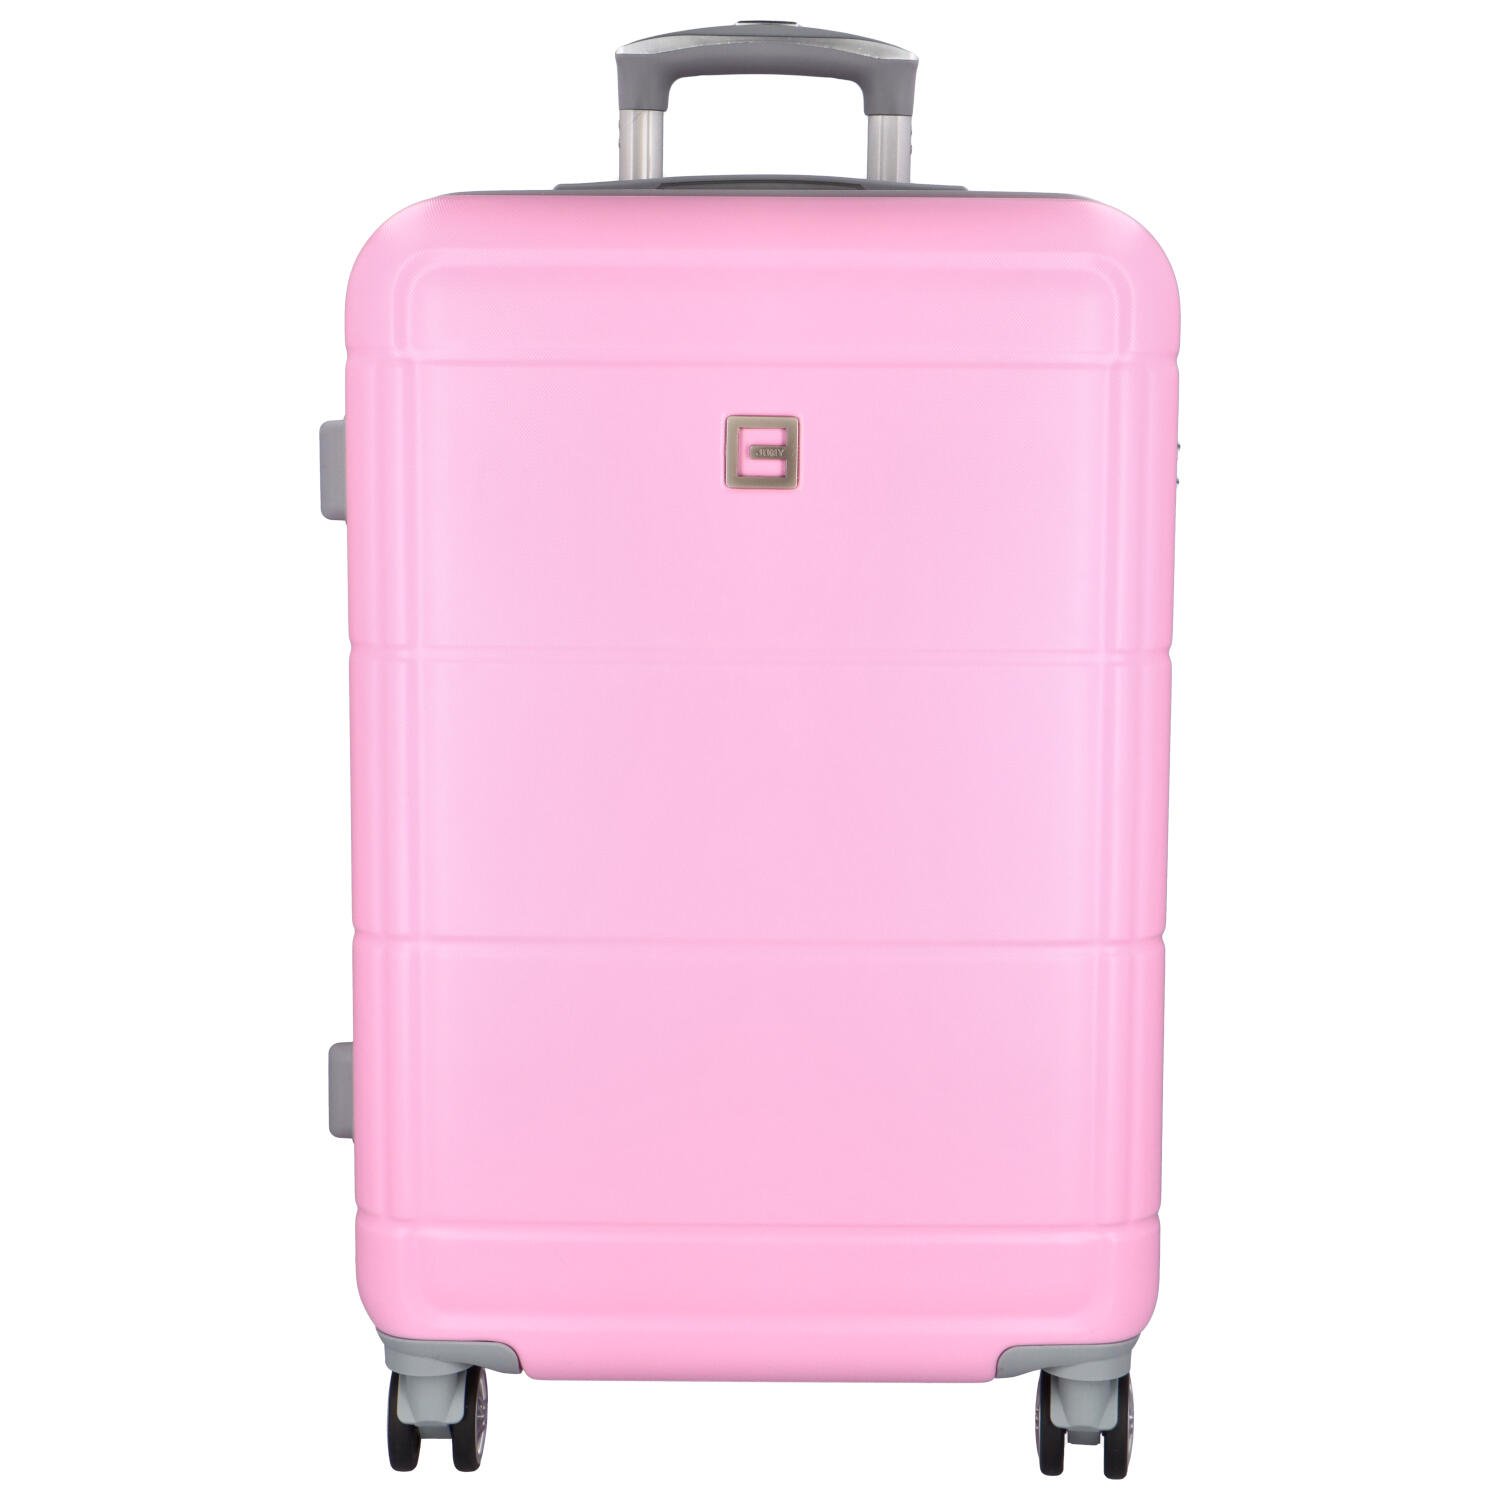 Cestovní plastový kufr Gothard velikost M, růžový